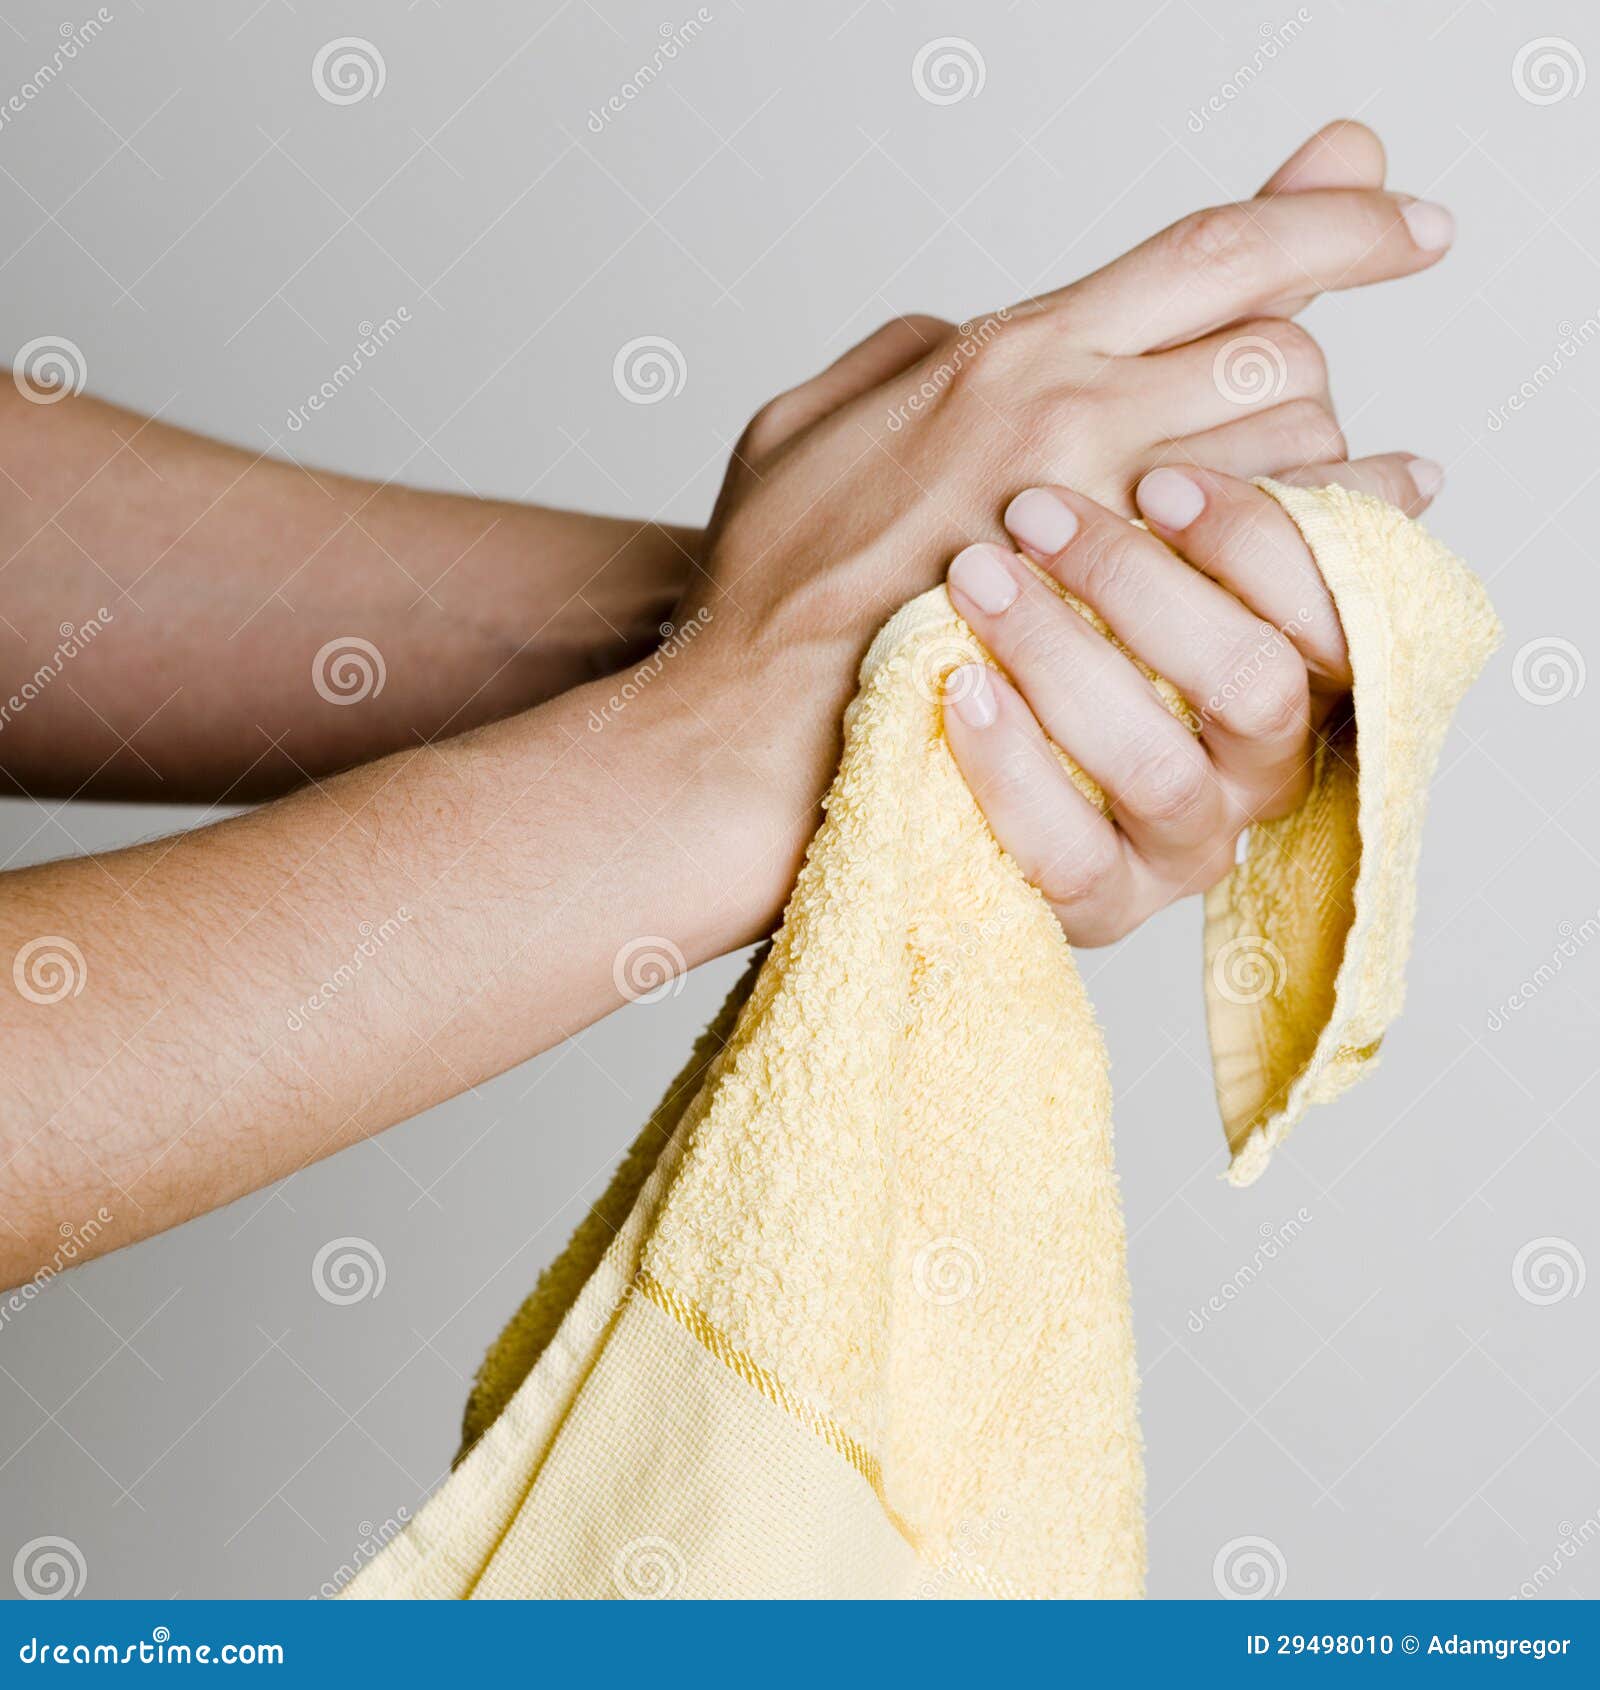 Вытирание полотенцем. Полотенце для рук. Вытирает руки. Вытирать руки полотенцем. Полотенце для рук и лица.